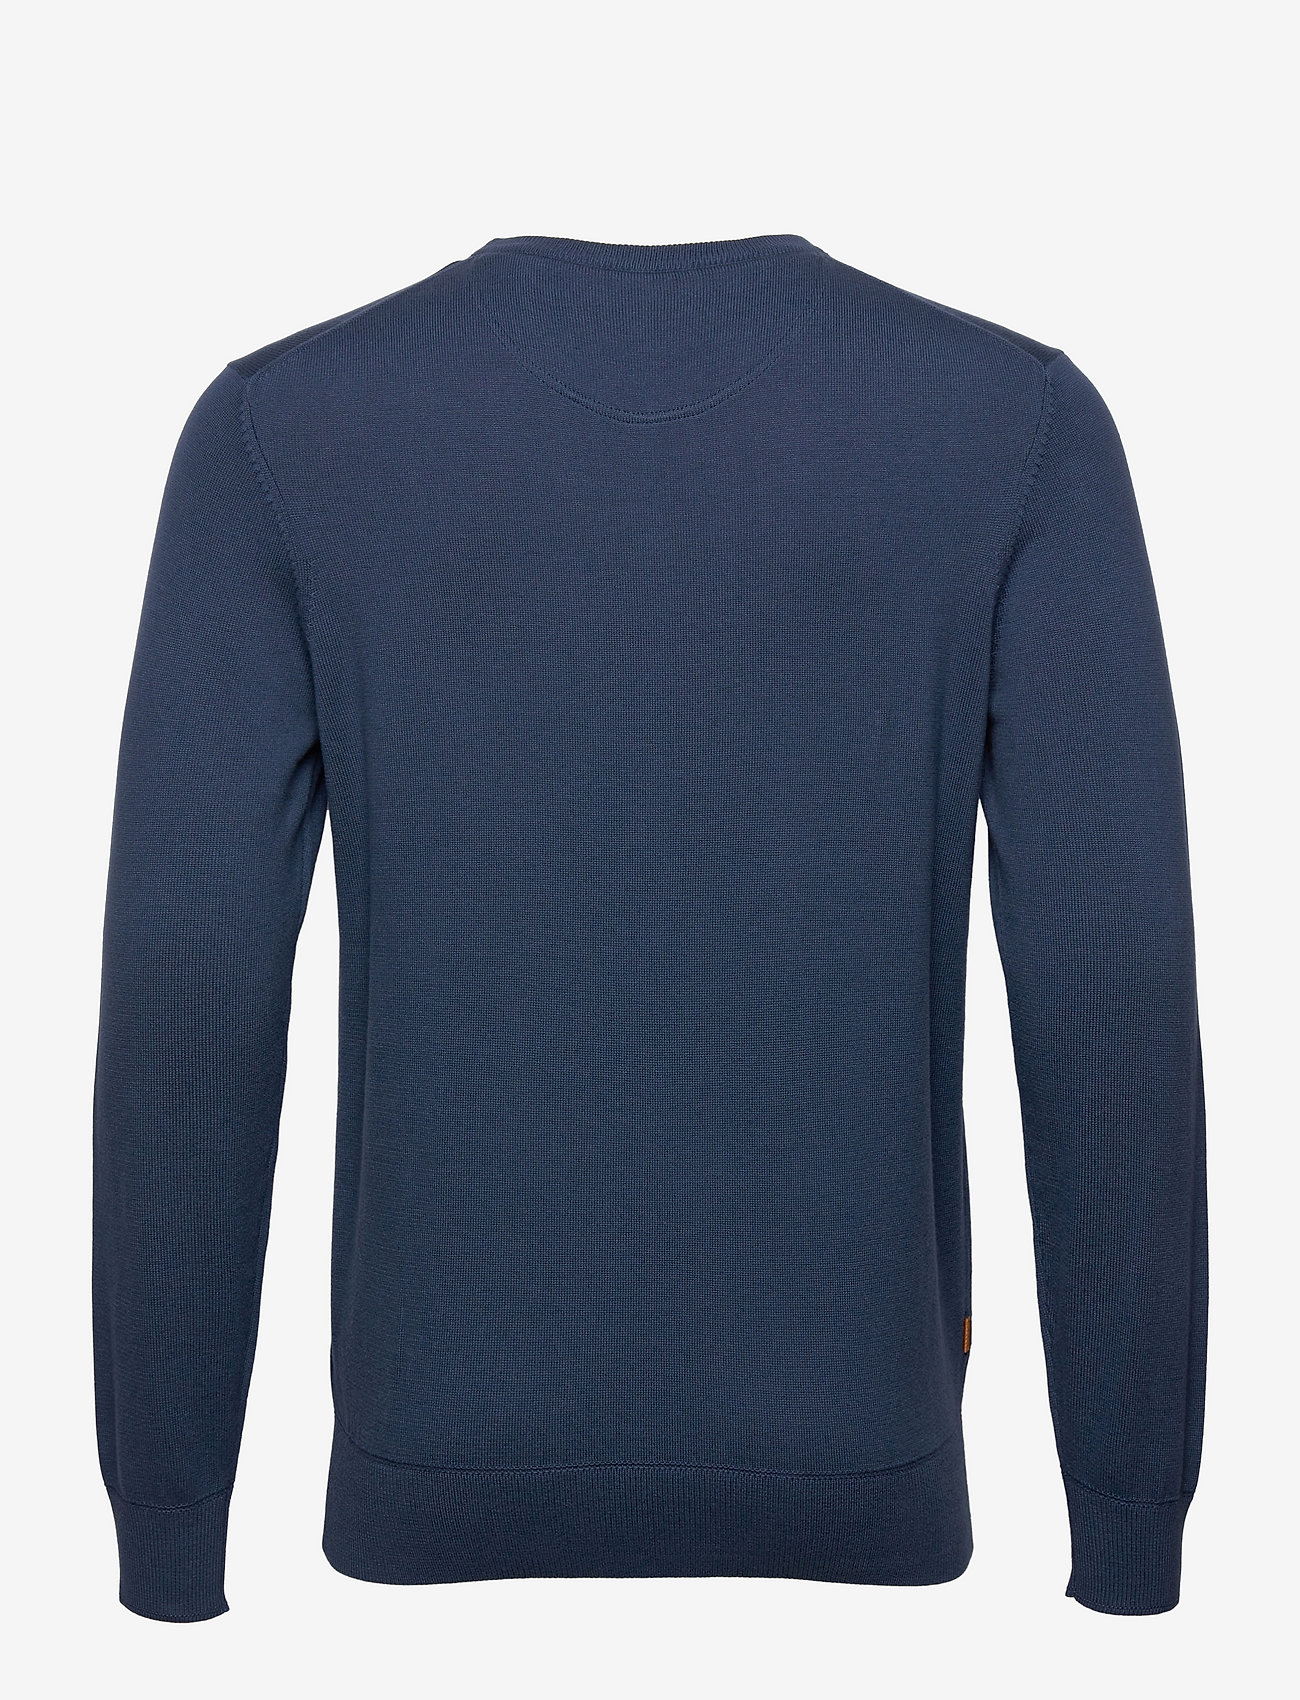 Timberland - WILLIAMS RIVER Cotton YD Sweater DARK DENIM - basic knitwear - dark denim - 1